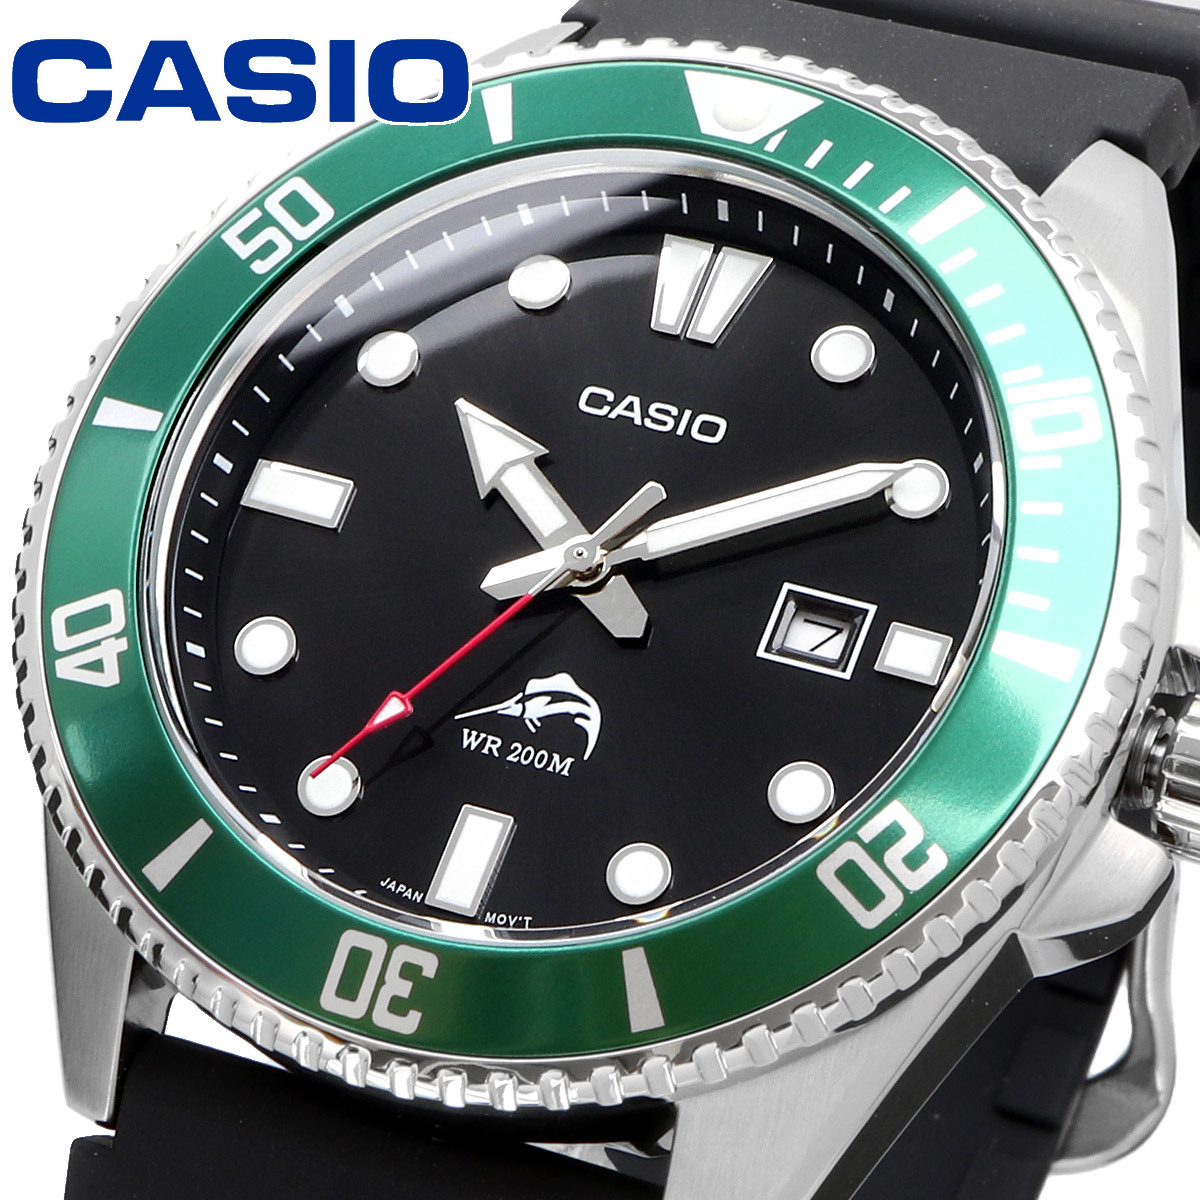 CASIO カシオ 腕時計 海外モデル クォーツ ダイバー 200M ウレタン ラバー ブラック MDV-106B-1A3V